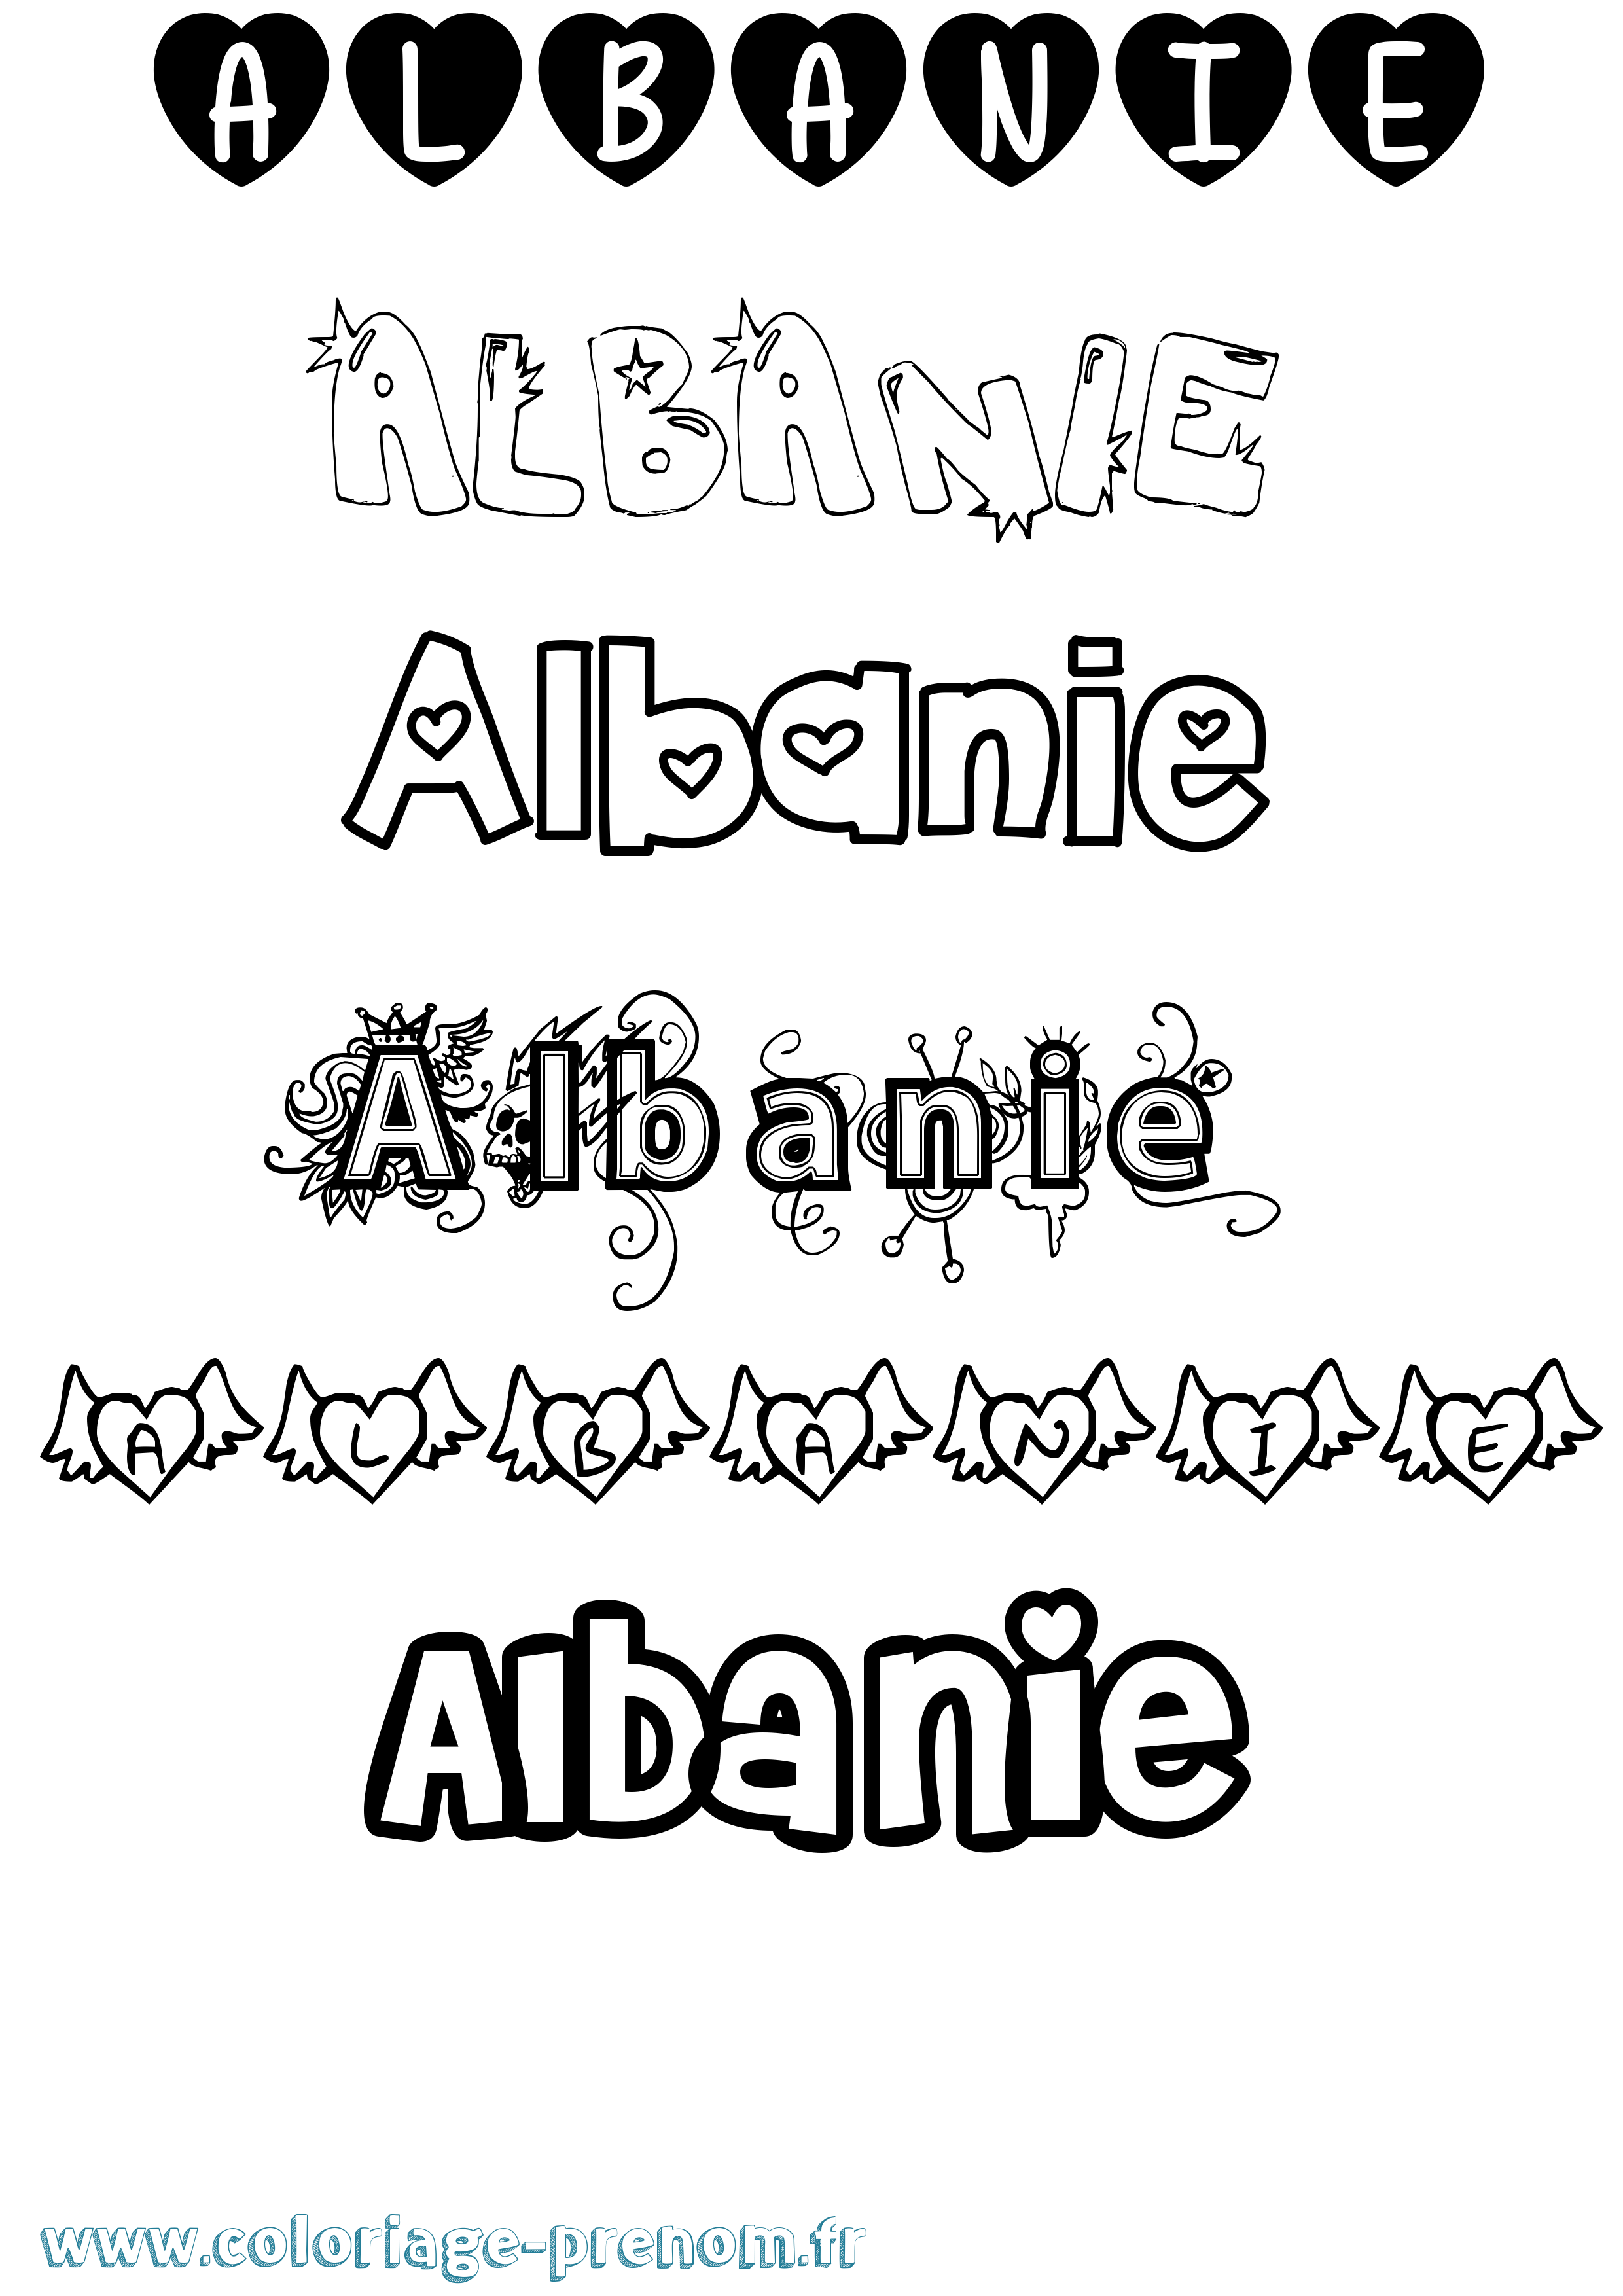 Coloriage prénom Albanie Girly